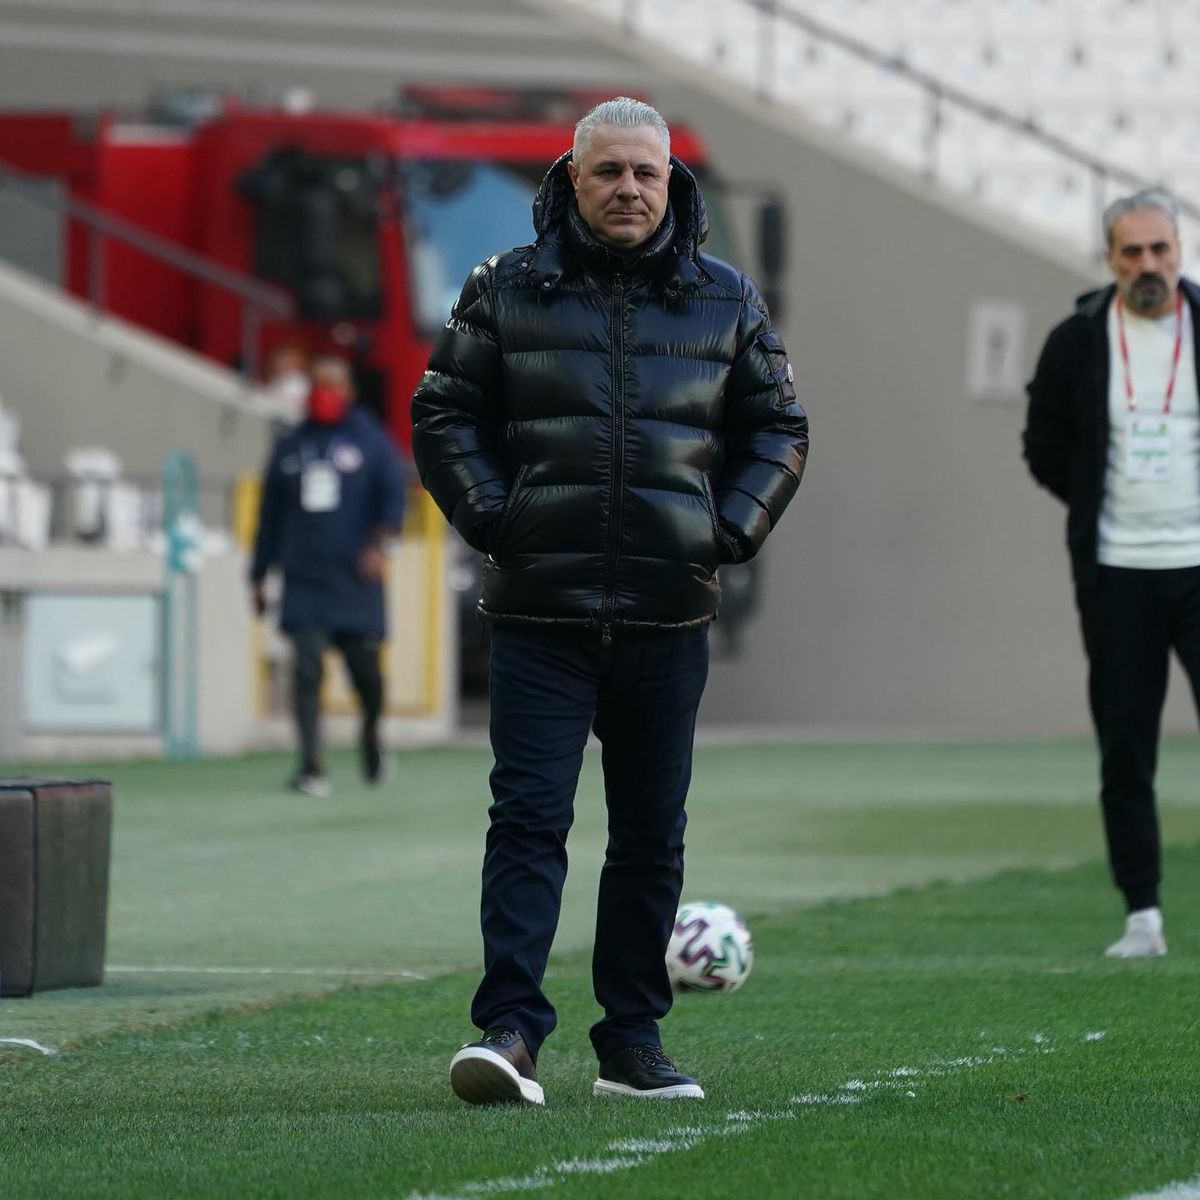 GAZIANTEP - ANKARUGUCU 2-0. Marius Șumudică e lider în Turcia! Alex Maxim a marcat din nou pentru Gaziantep